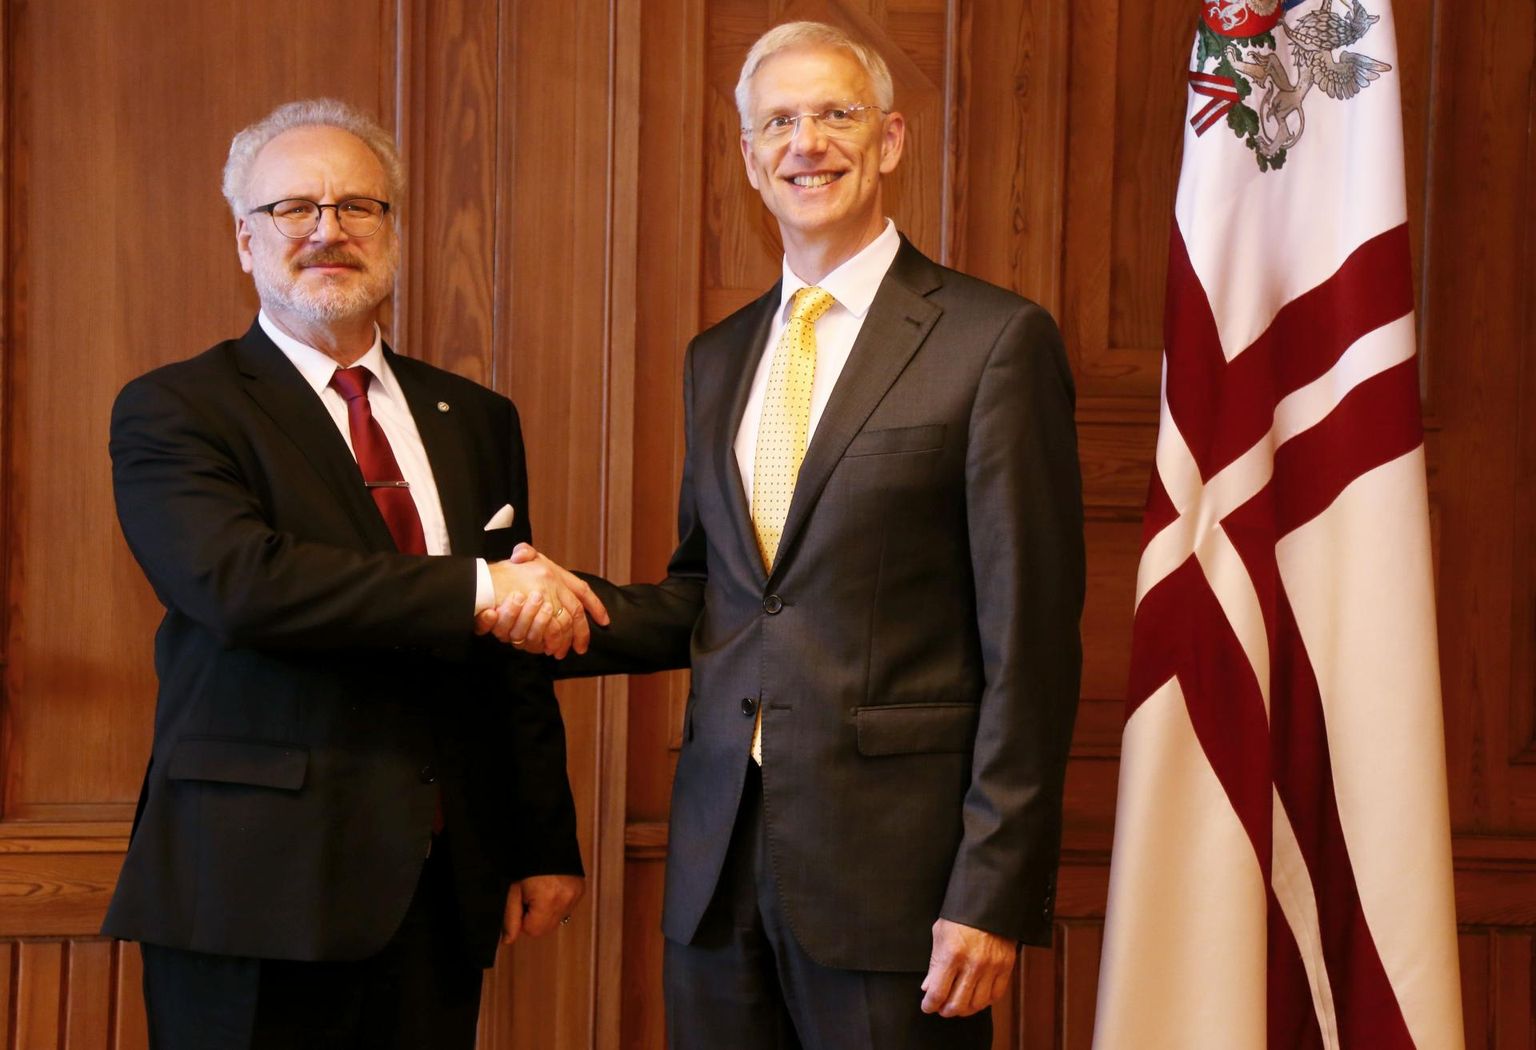 Presidendiks valitud Egils Levits ja peaminister Krišjānis Kariņš toovad Läti poliitikasse euroopalikke tuuli.